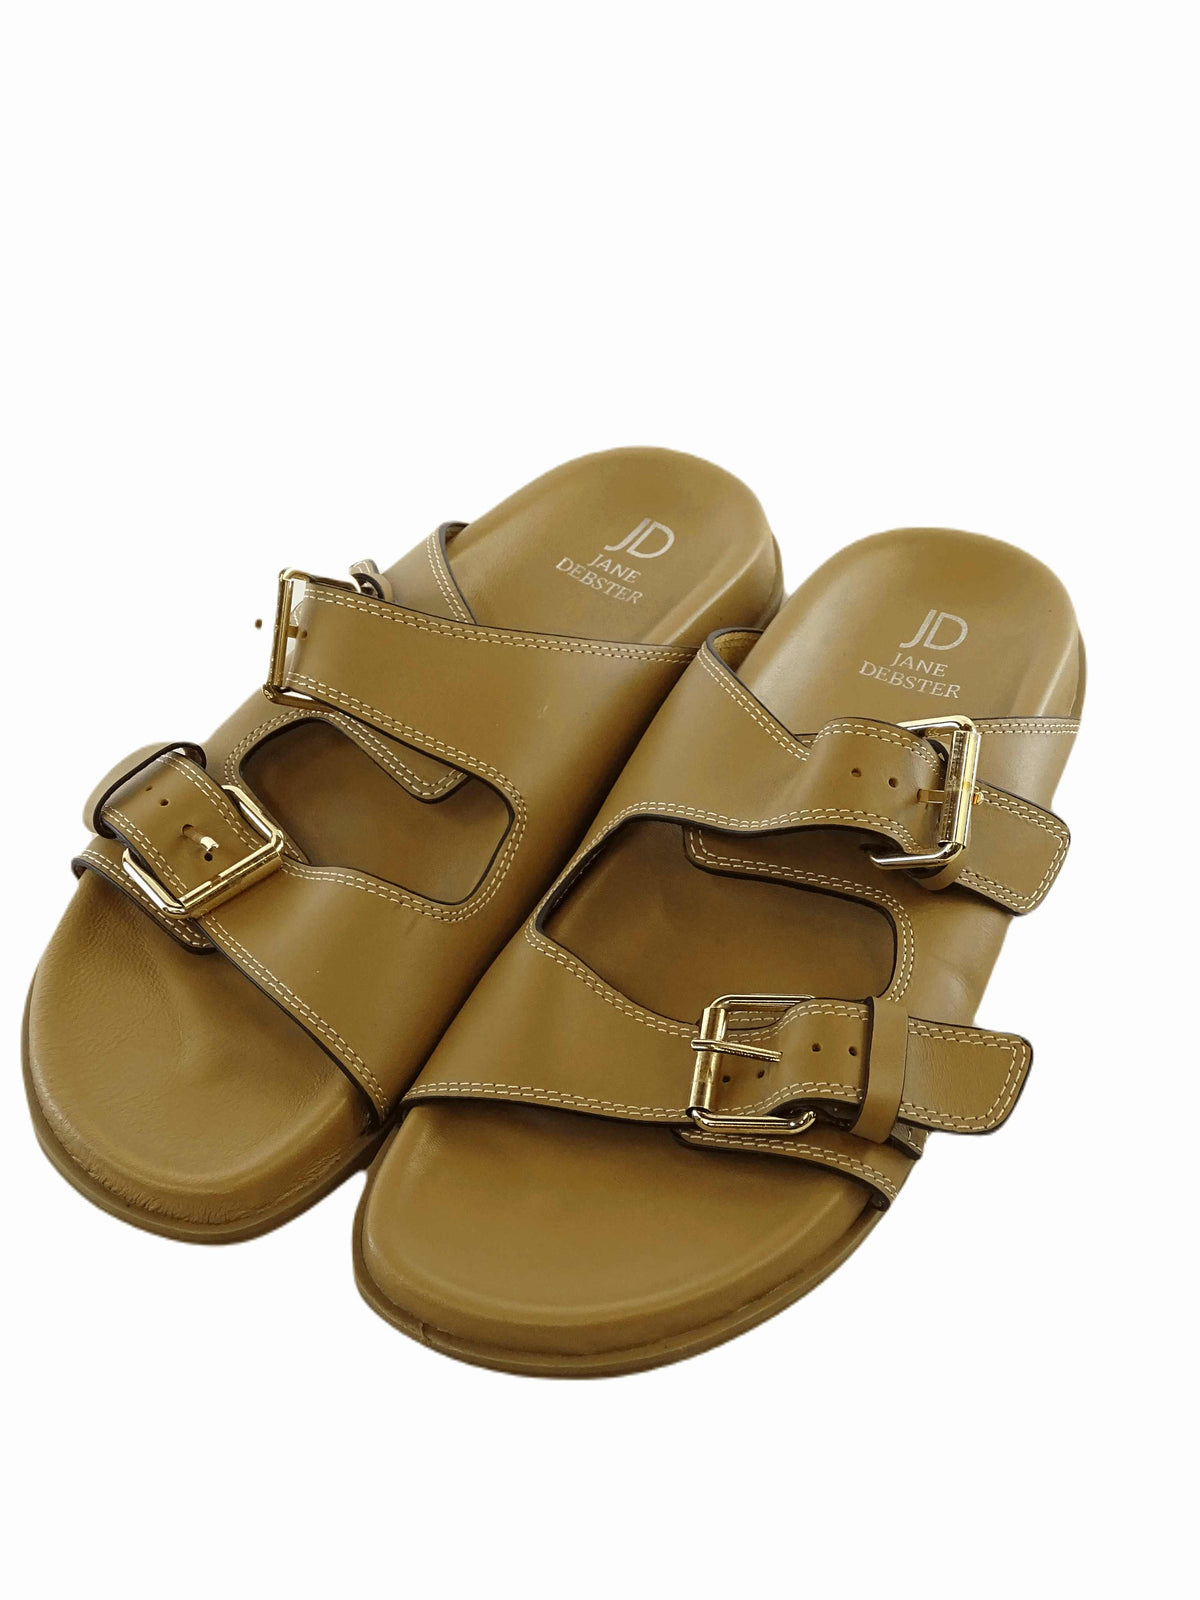 Jane Webster Tan Leather Sandals AU/US 7 (EU 38)